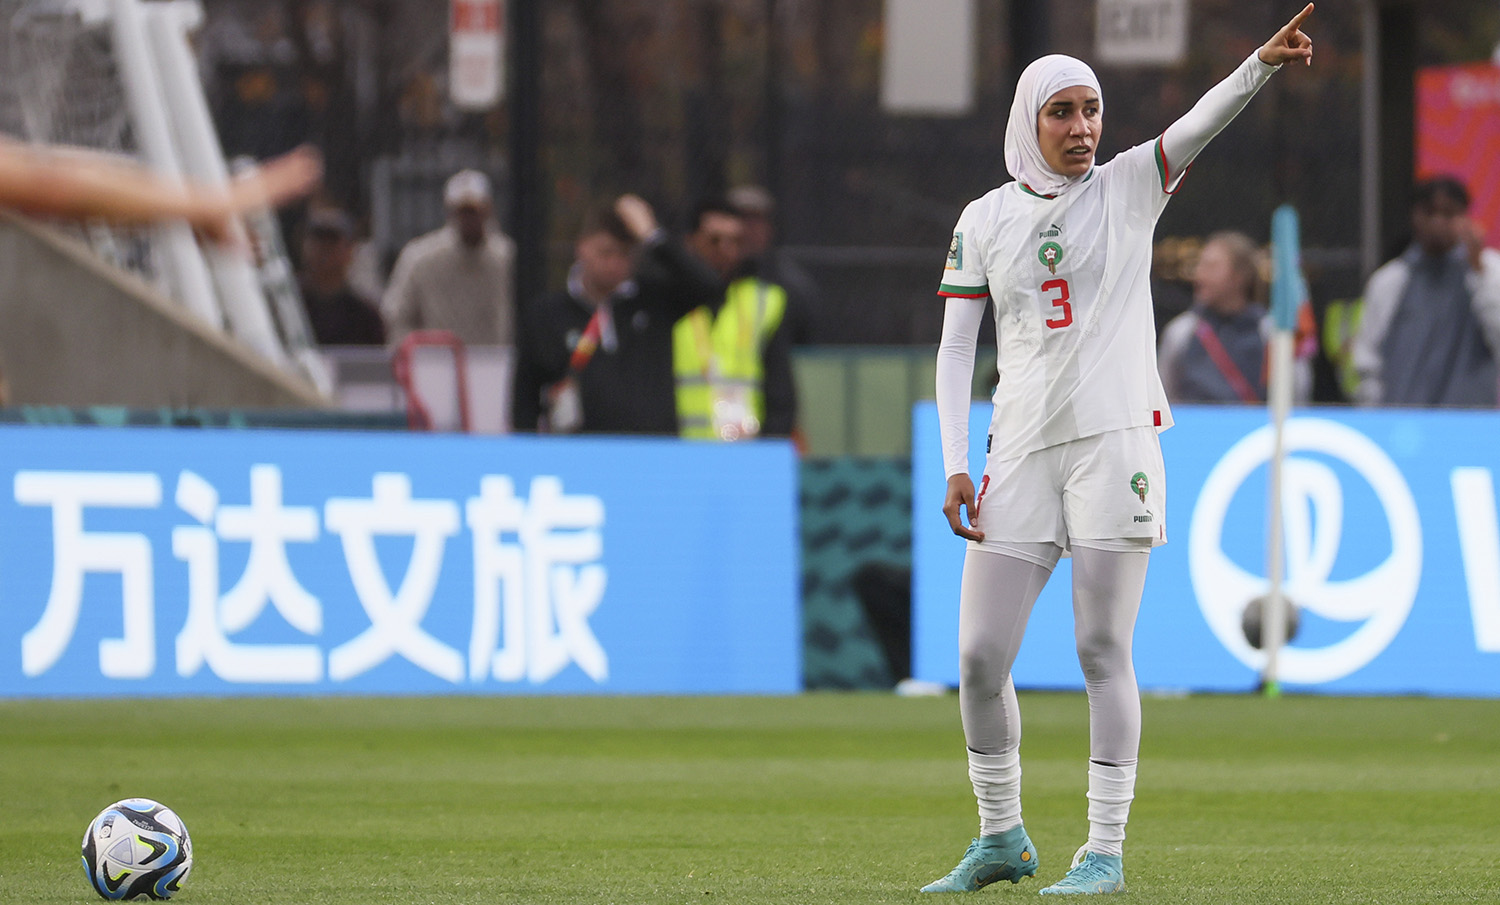 Kvinne på fotballbane i kvit fotballdrakt med langerma skjorte, heildekkande strømper og hijab peikar medan ho har ballen framfor seg, klar til avspark.